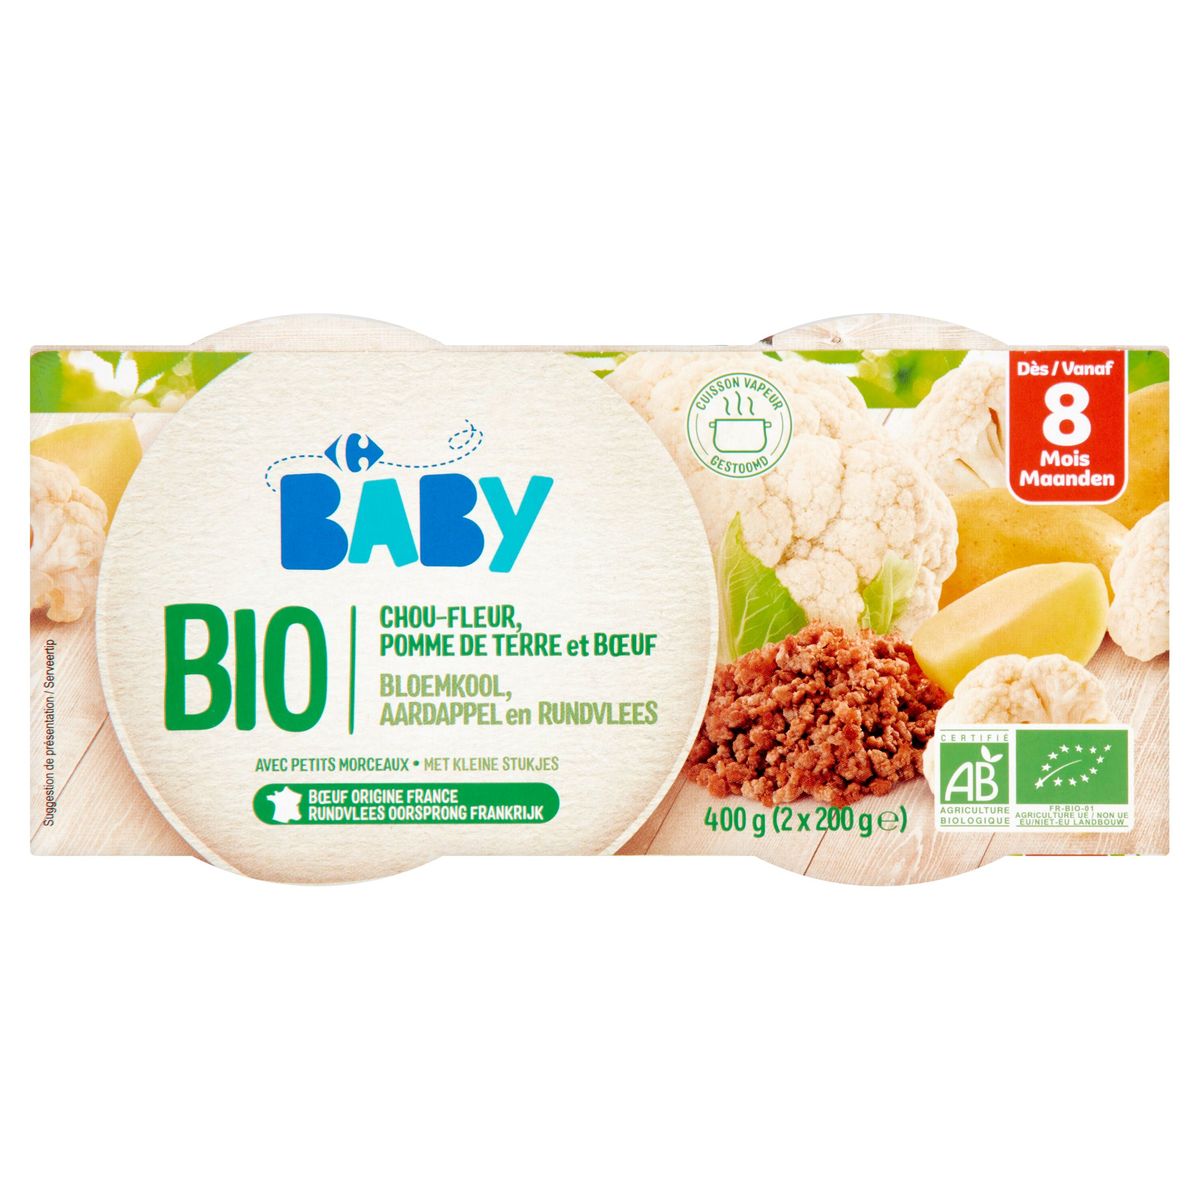 Carrefour Baby Bio Chou-Fleur, Pomme de Terre et Boeuf 8M+ 2 x 200 g